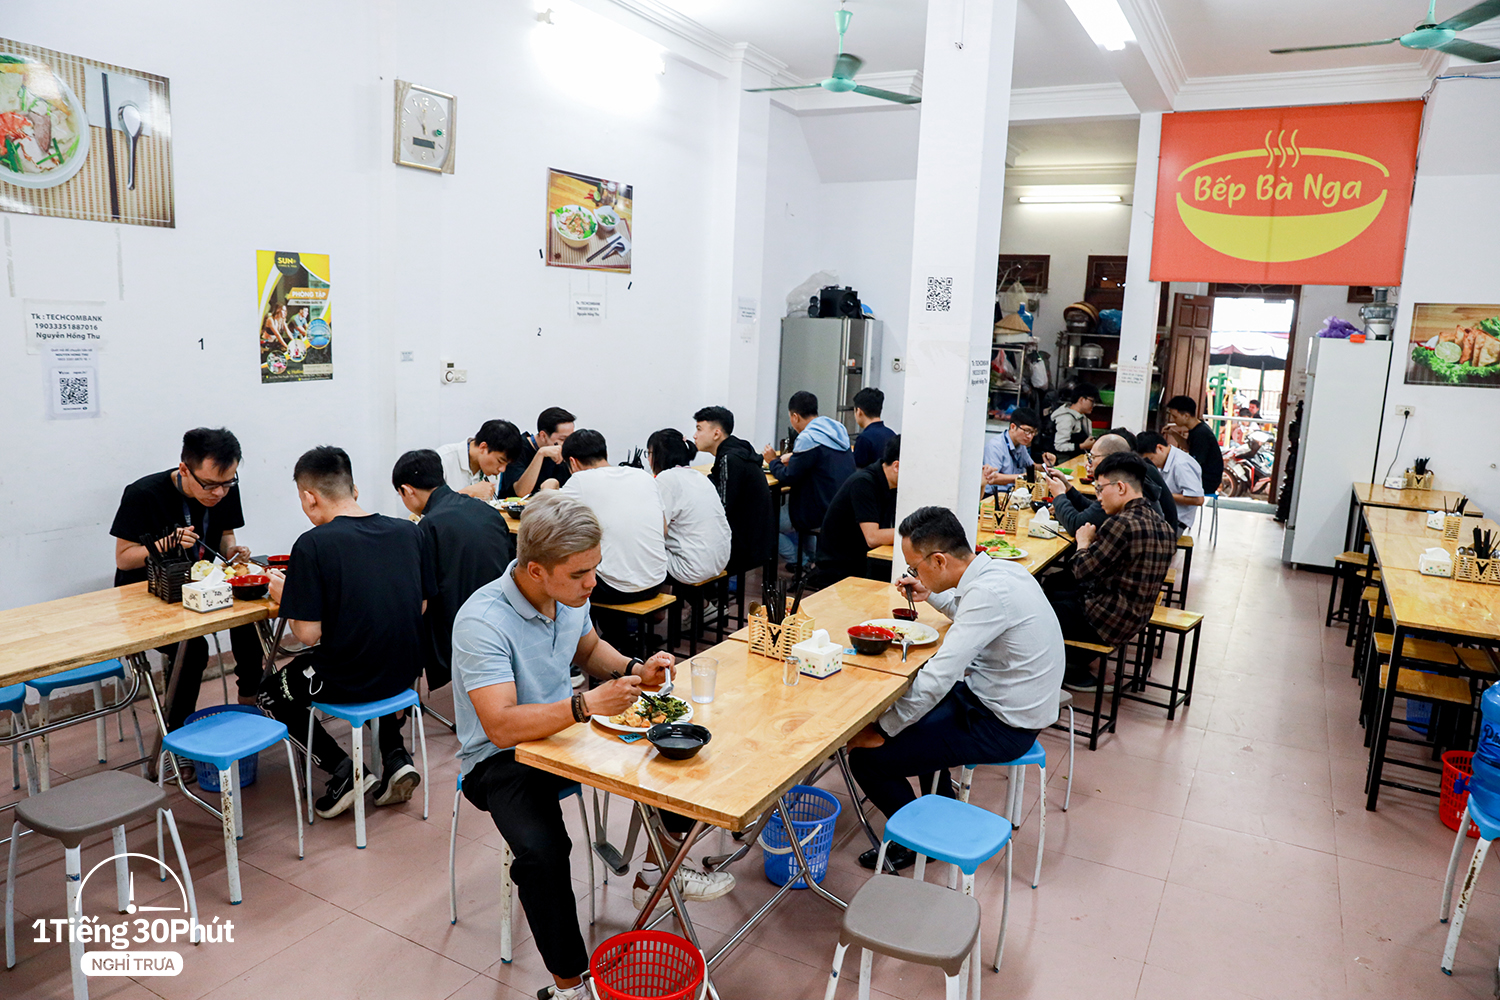 Duy Tân - con phố dài 500m nhưng hàng trăm dân văn phòng mỗi ngày bỏ tự nấu cơm trưa, chọn ăn ngoài vì giá cực rẻ - Ảnh 17.